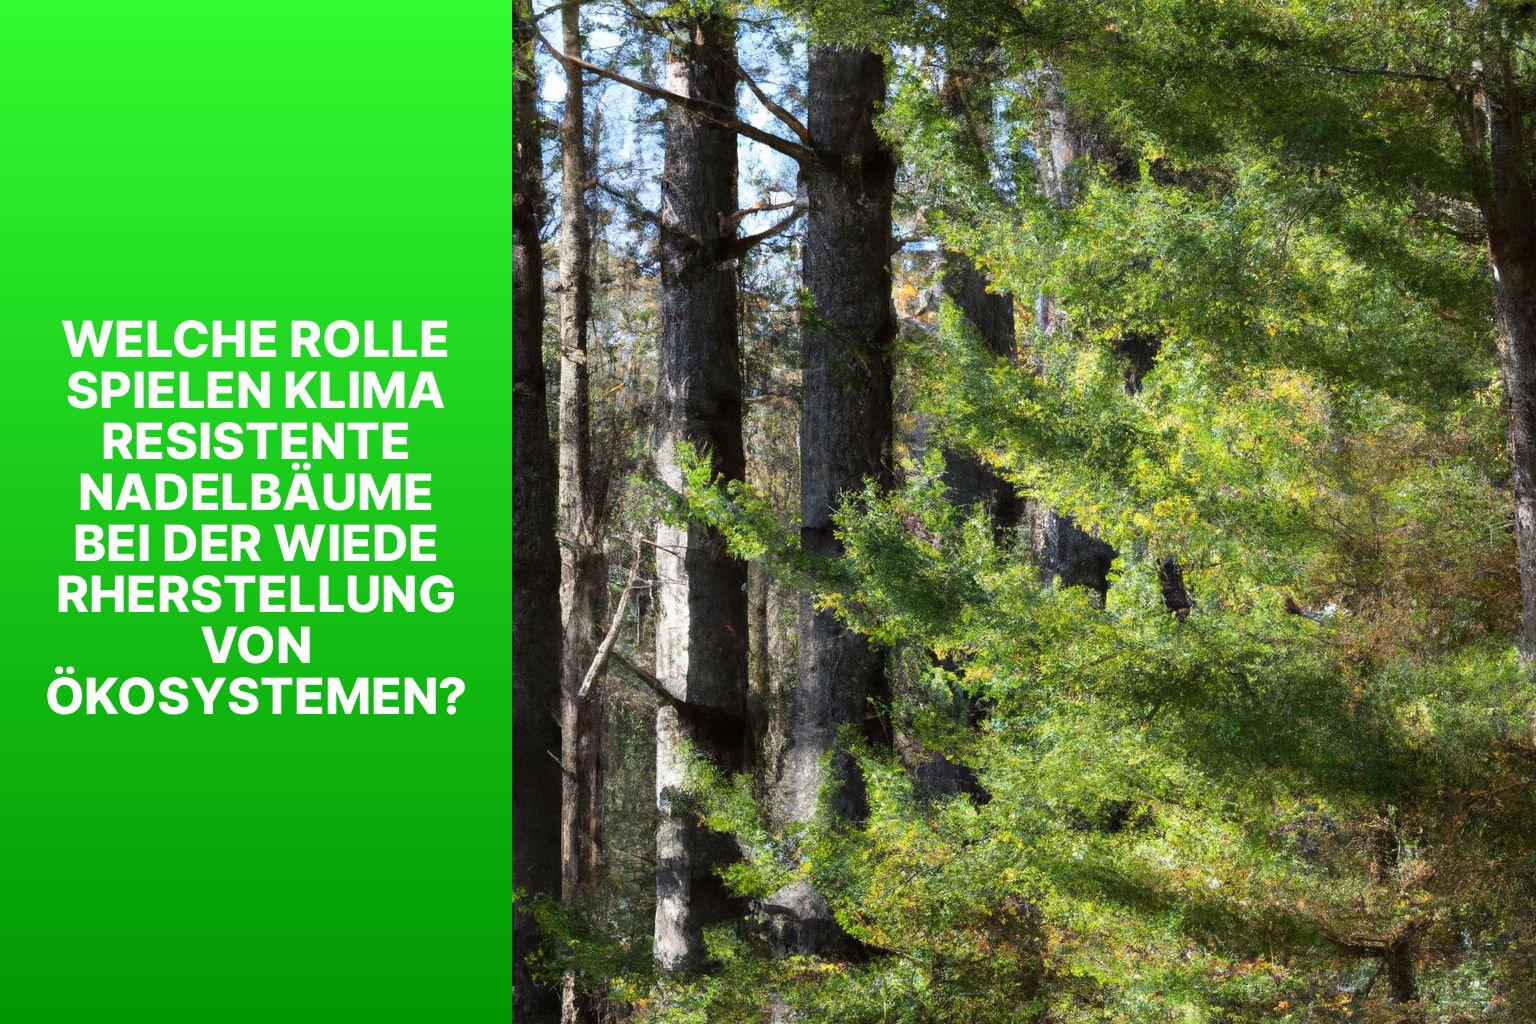 Welche Rolle spielen klimaresistente Nadelbäume bei der Wiederherstellung von Ökosystemen? - klimaresistente Nadelbäume 